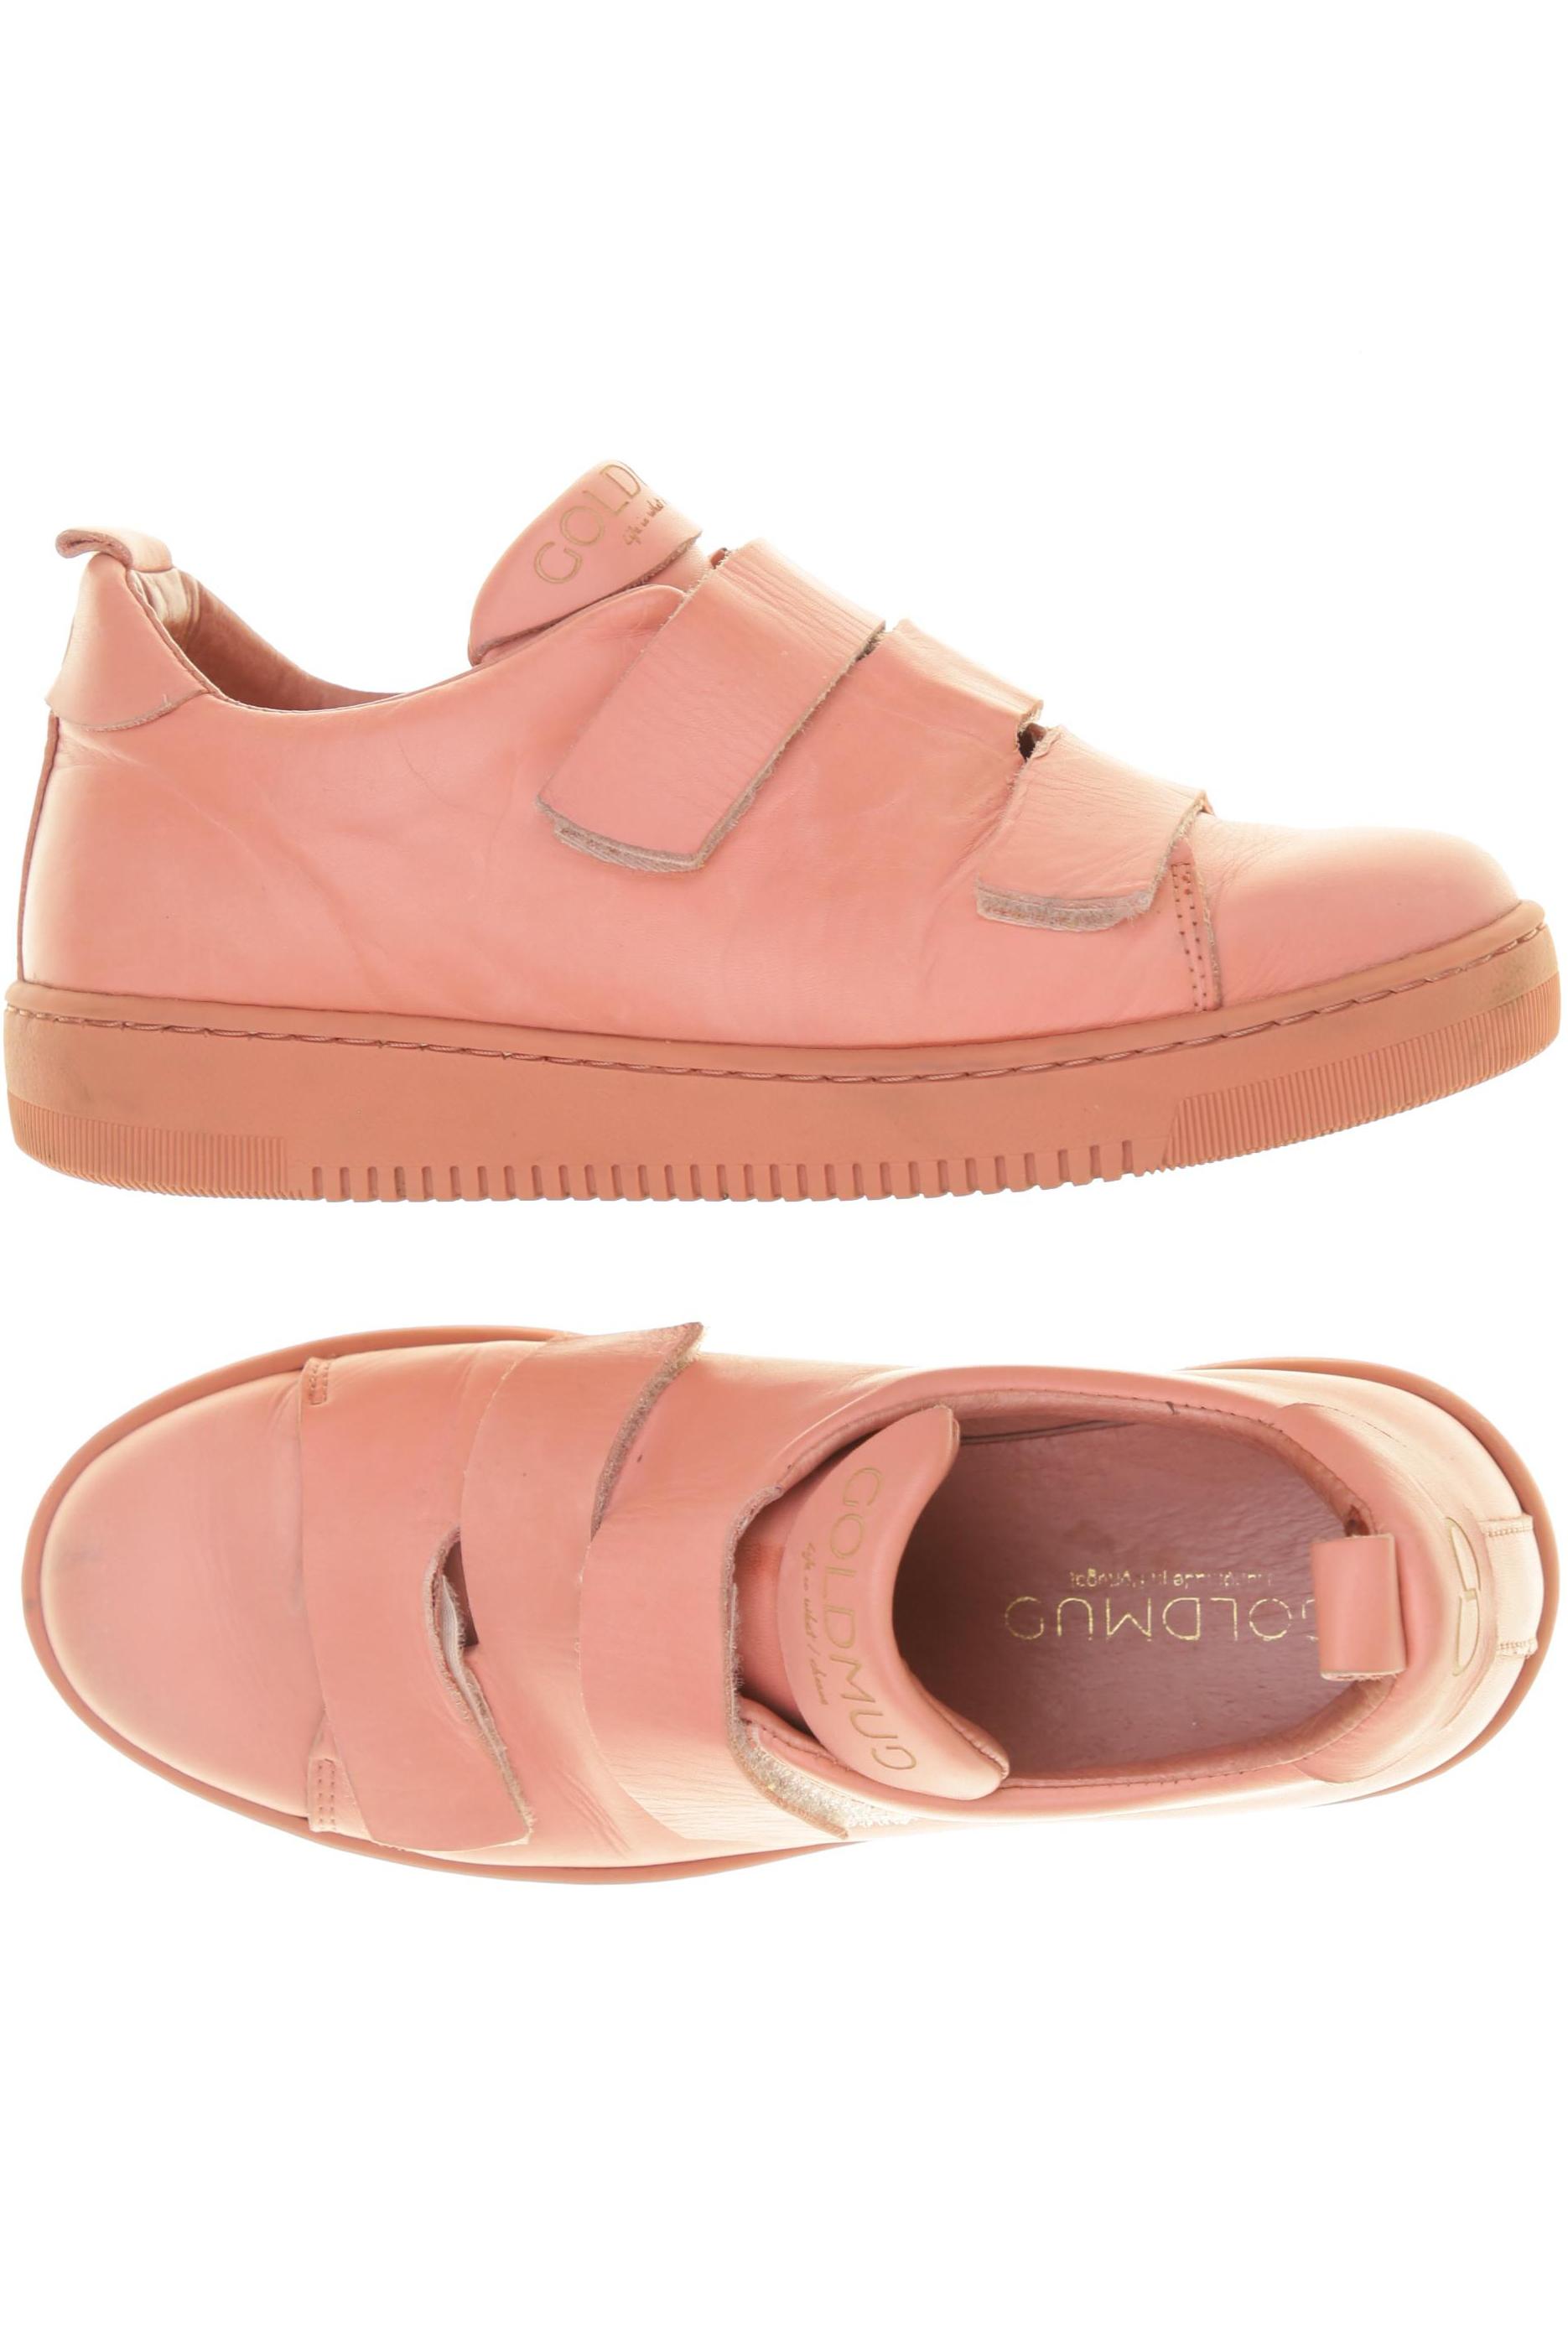 Image of GOLDMUD Damen Sneakers pink DE 36